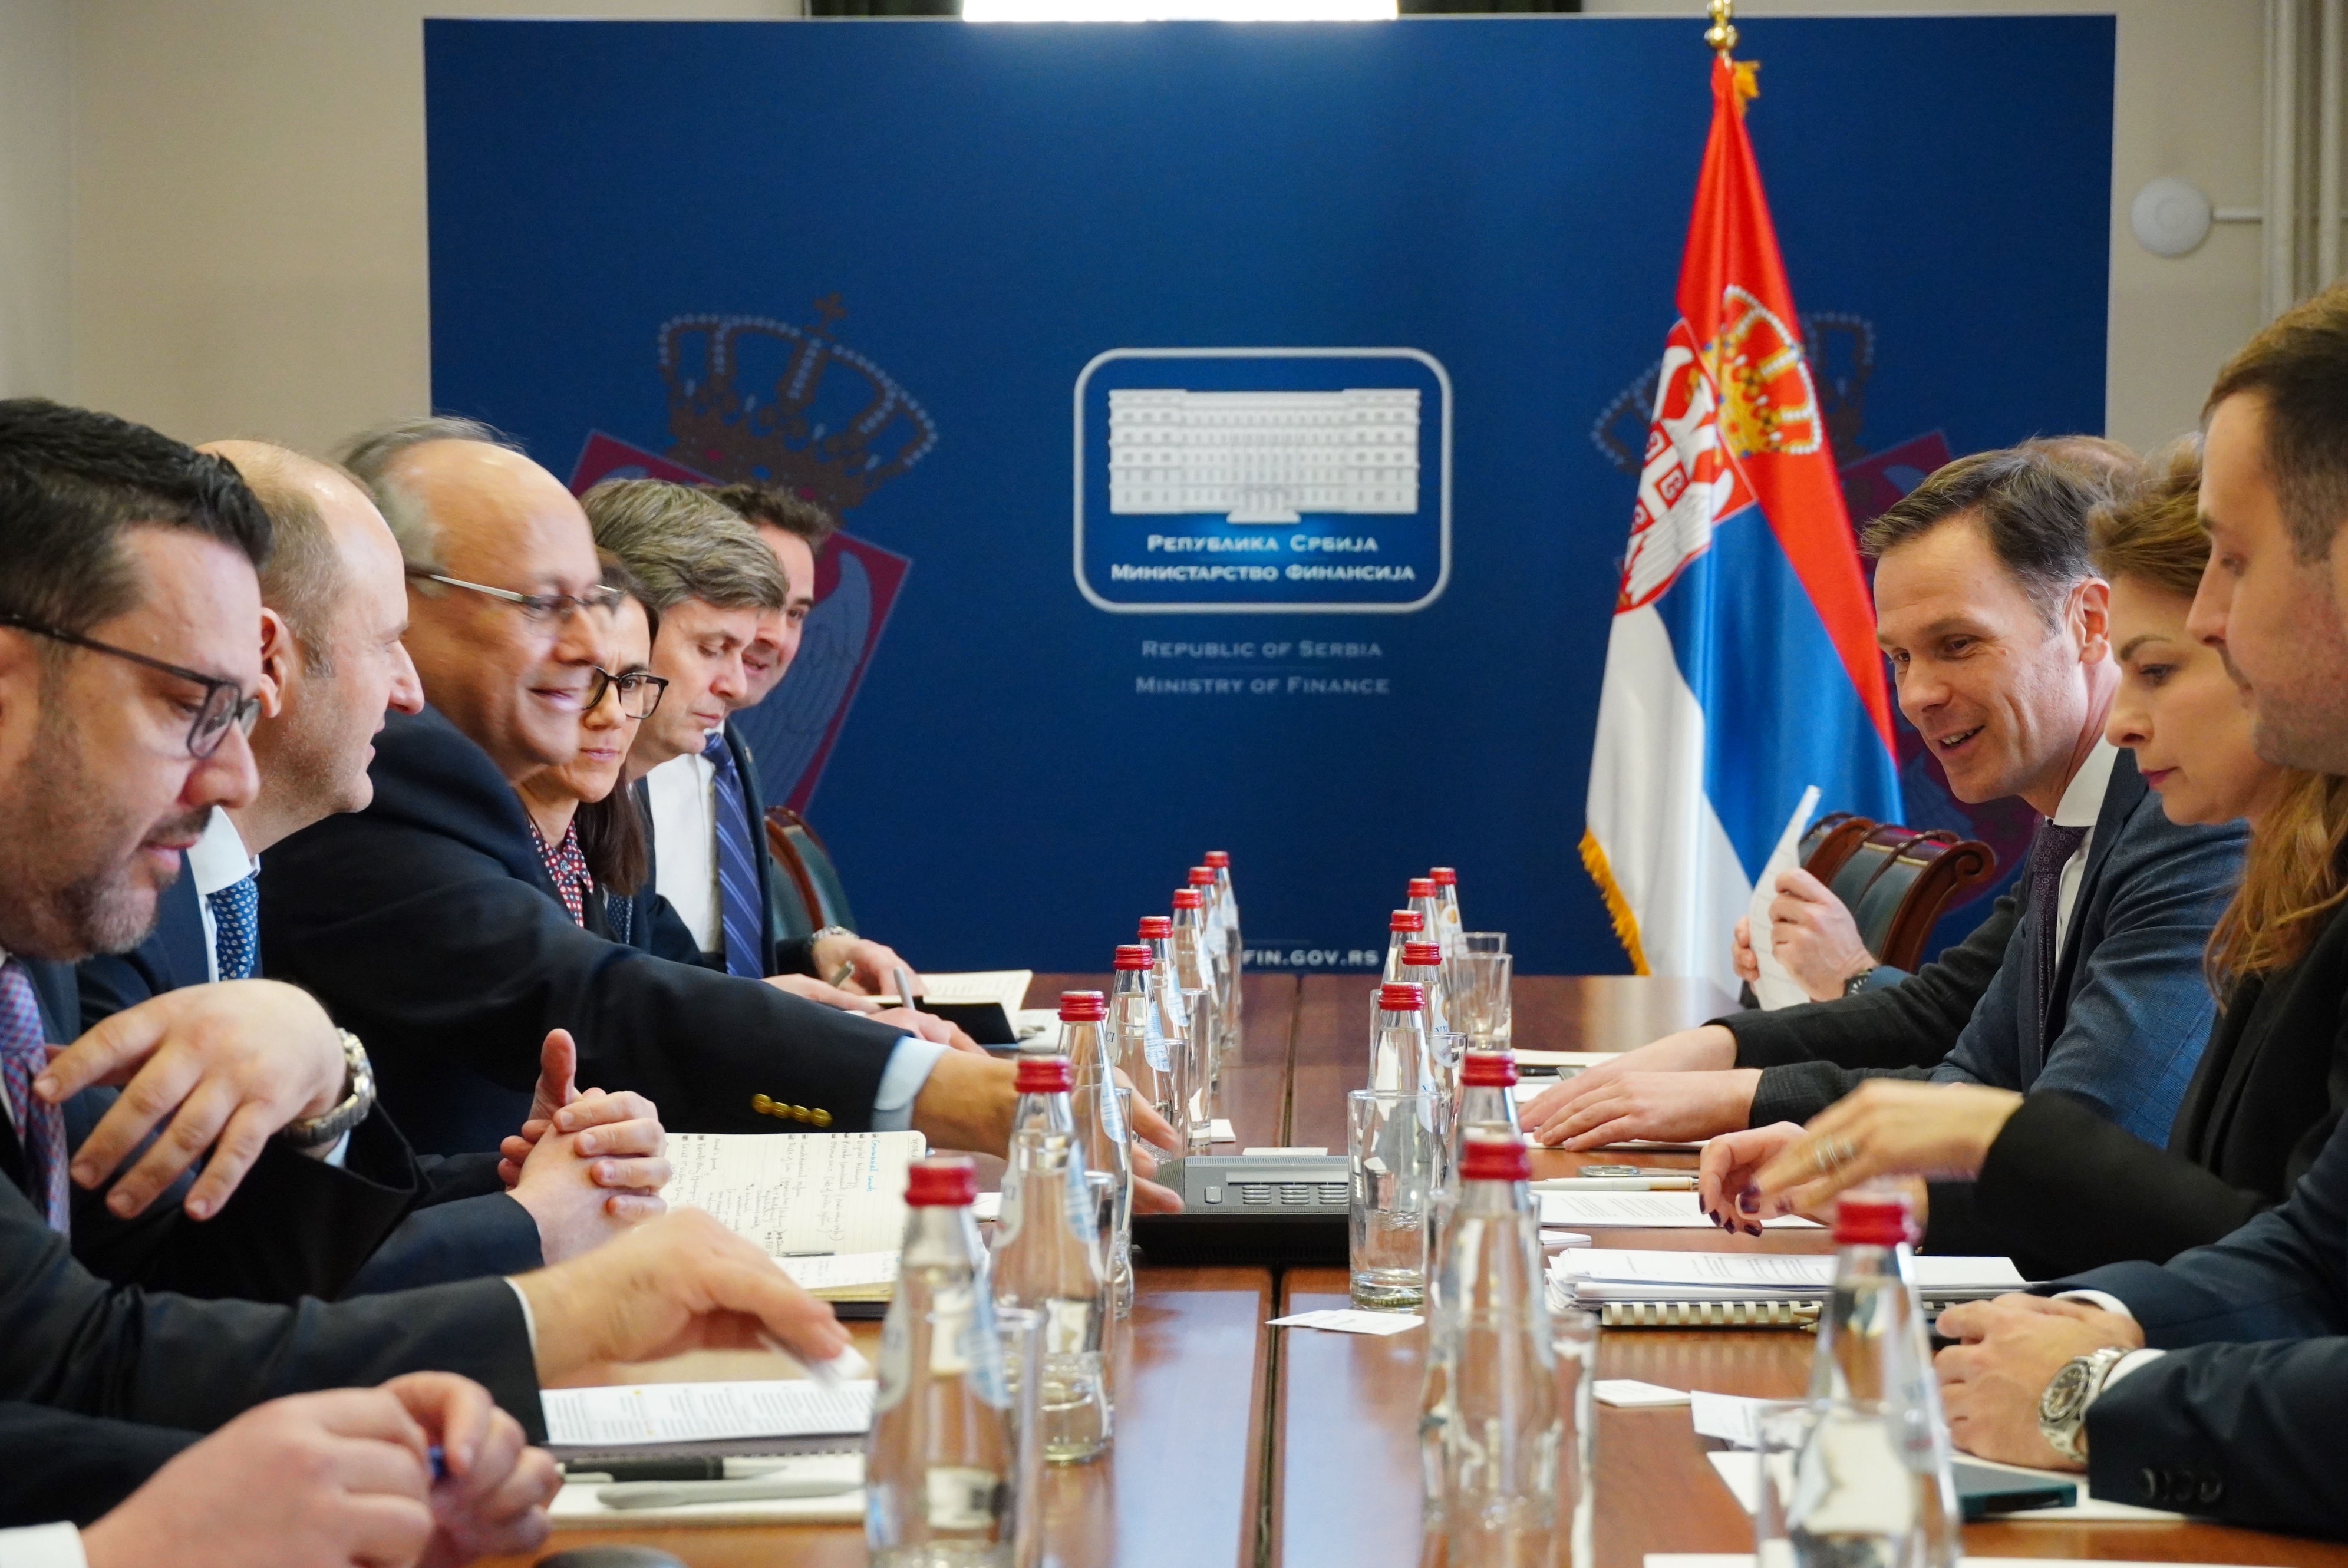 Mali: Srbija izgradila kredibilitet ispunjavanjem obećanja, važna podrška Svetske banke